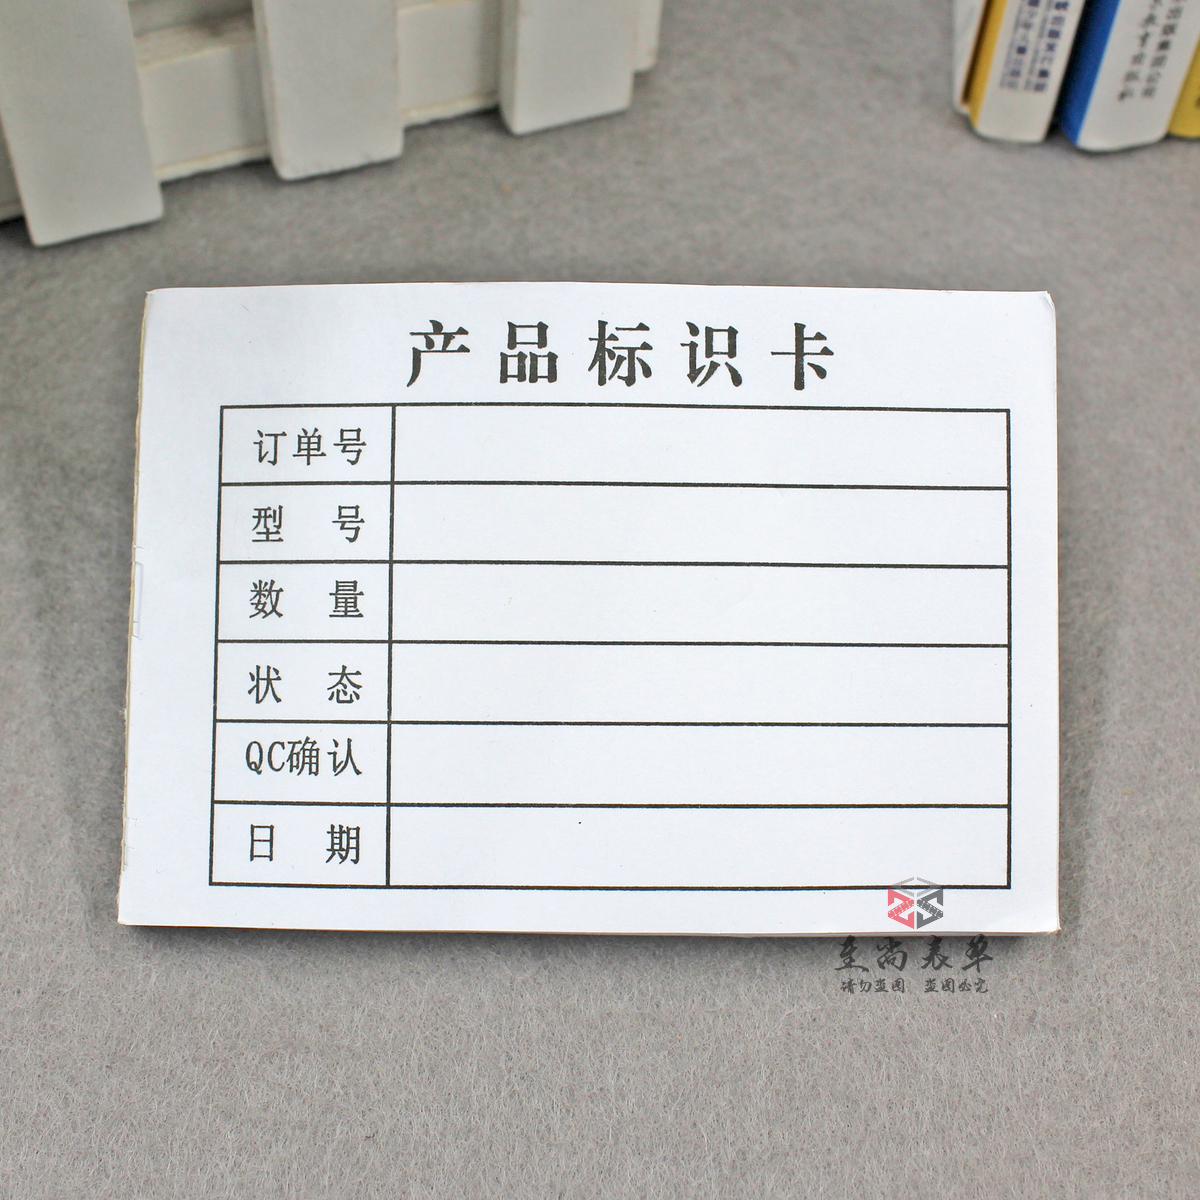 生产车间产品标识卡产品状态标签纸仓库车间生产现场物料标示单据